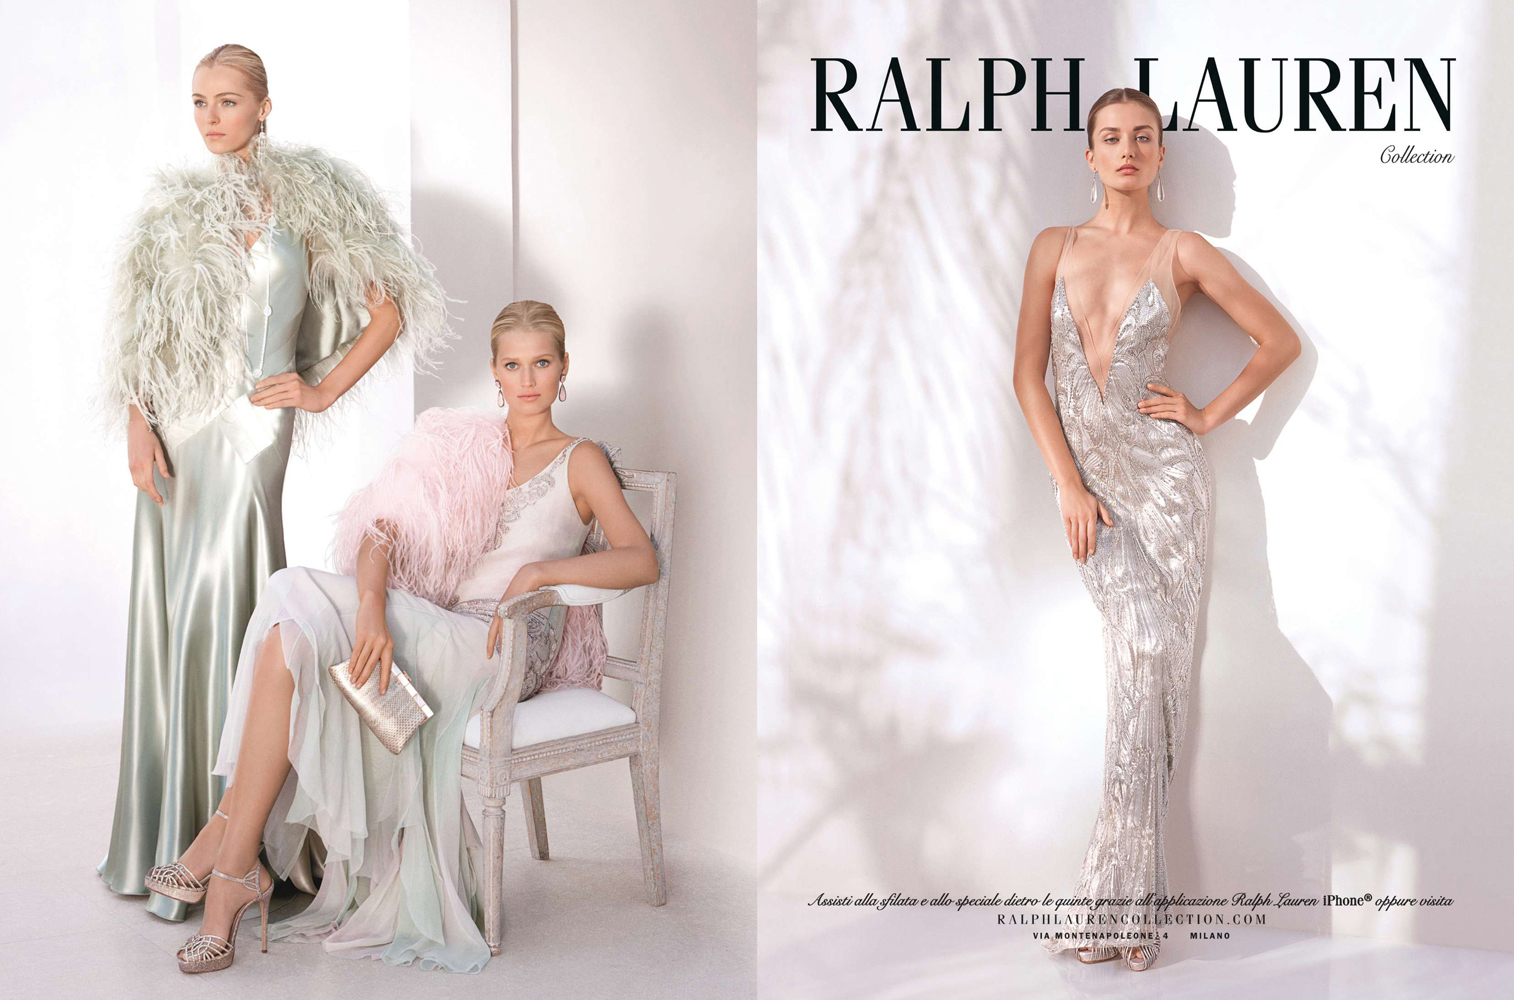 Ralph Lauren Collection SS 2012